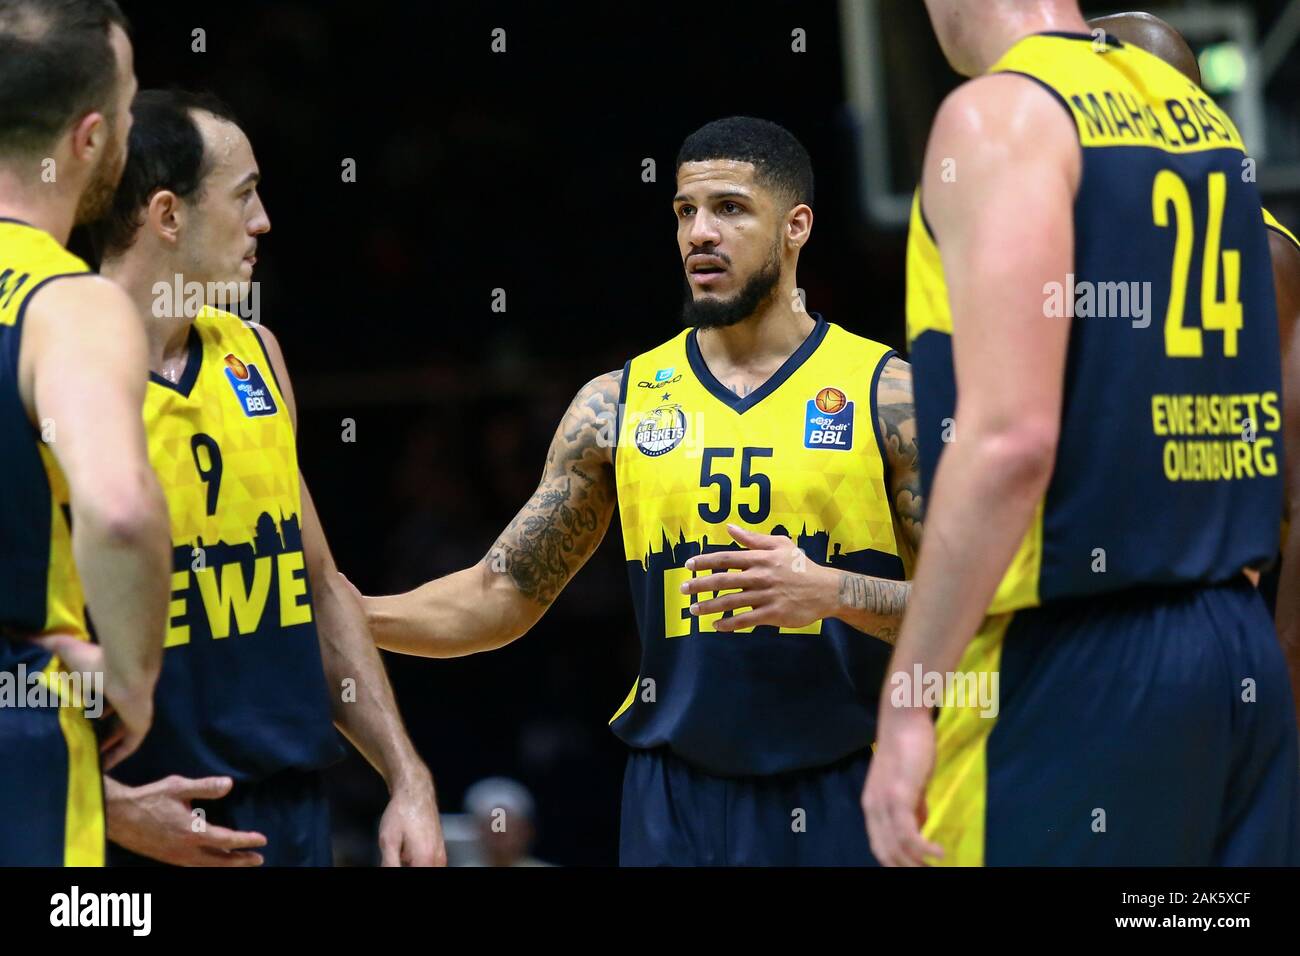 Braunschweig, Allemagne, le 30 décembre 2019 : Tyler Larson de EWE Oldenbourg Panier parle à ses coéquipiers lors de la BBL Bundesliga match de basket-ball Banque D'Images